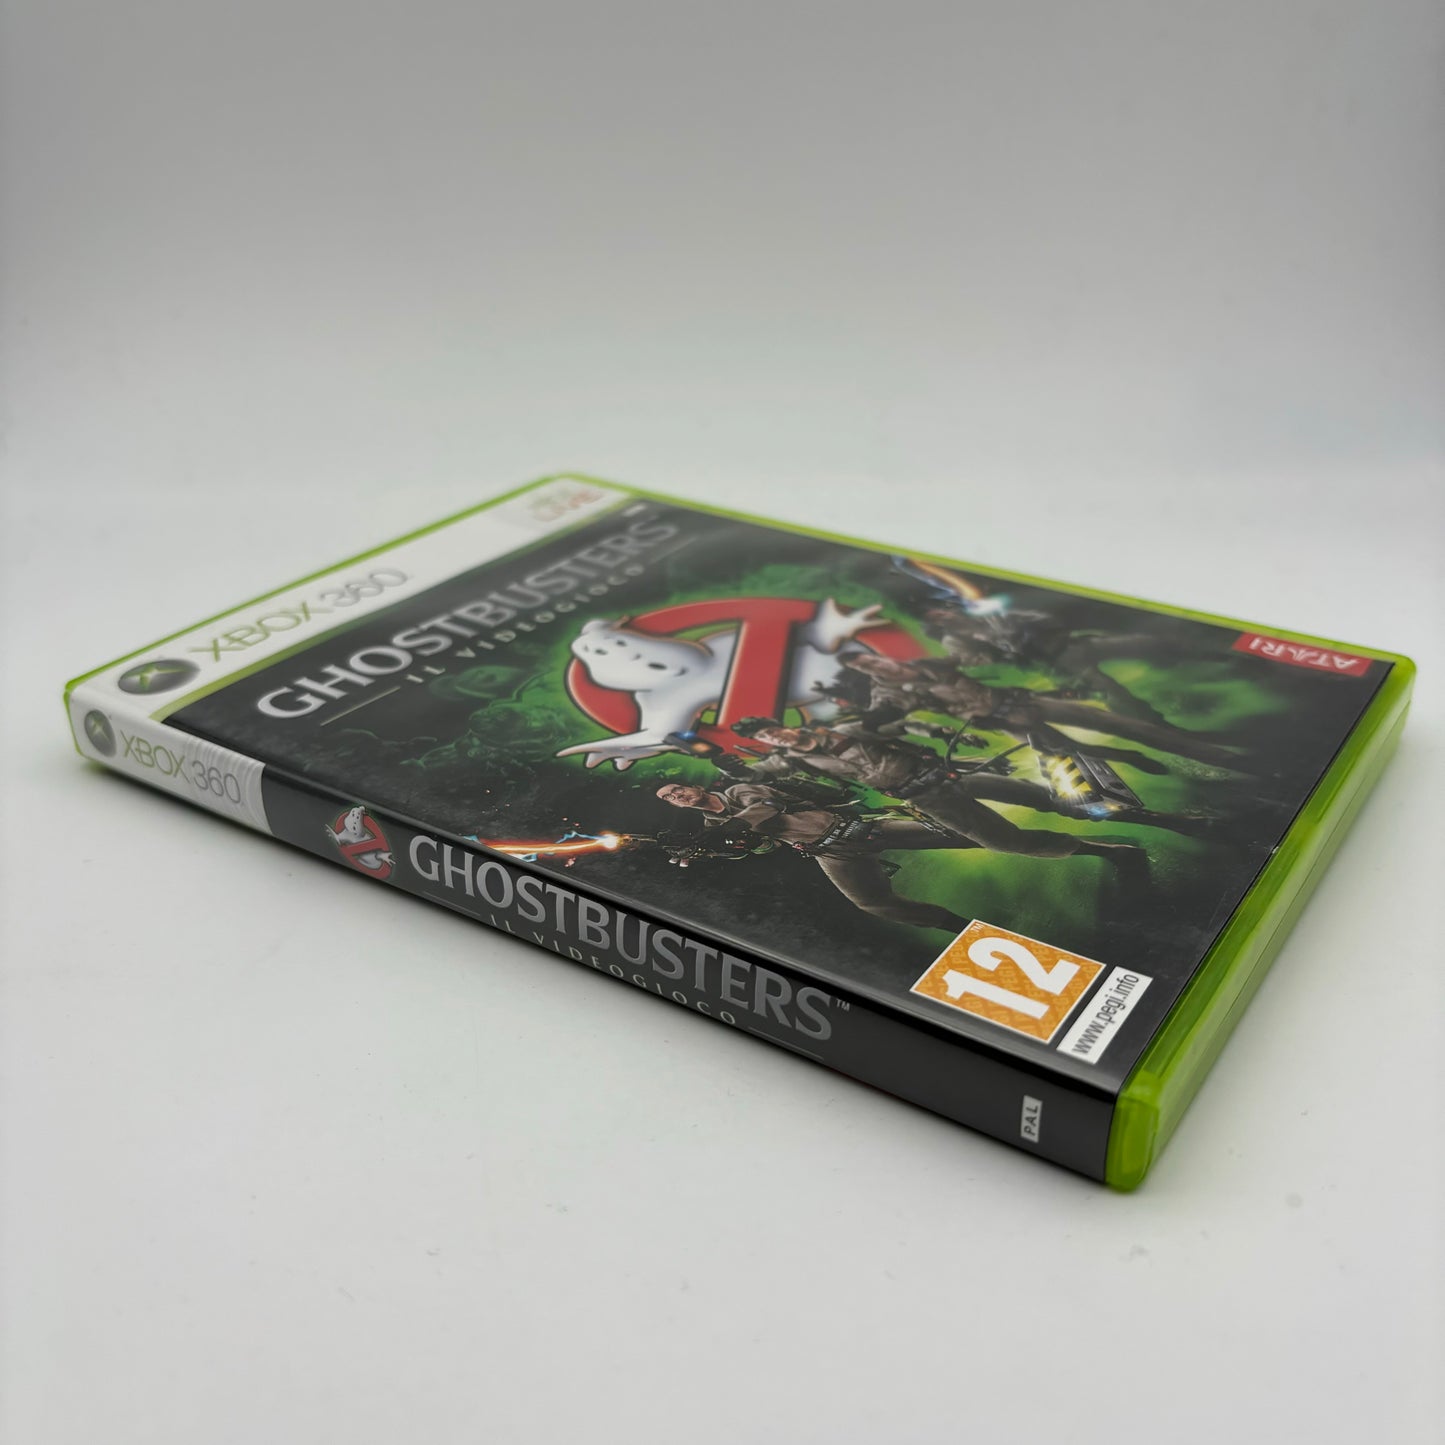 Ghostbusters il Videogioco Xbox 360 Pal Ita (USATO)